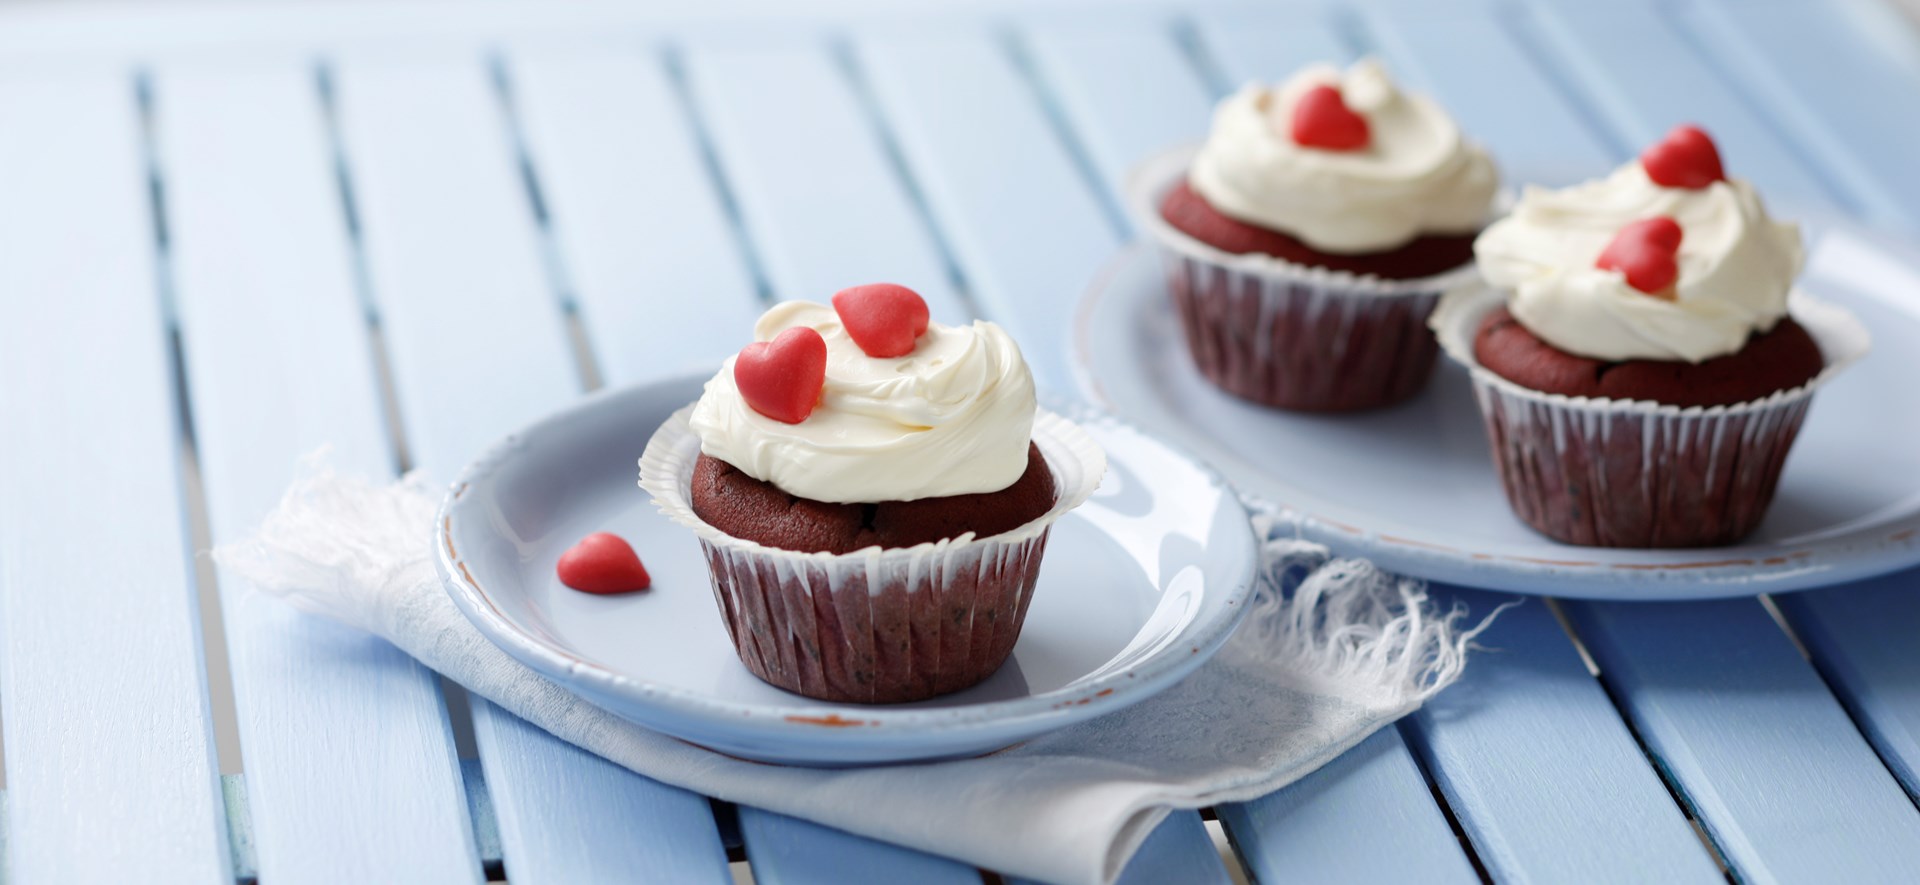 Bild zu Red velvet-Cupcakes